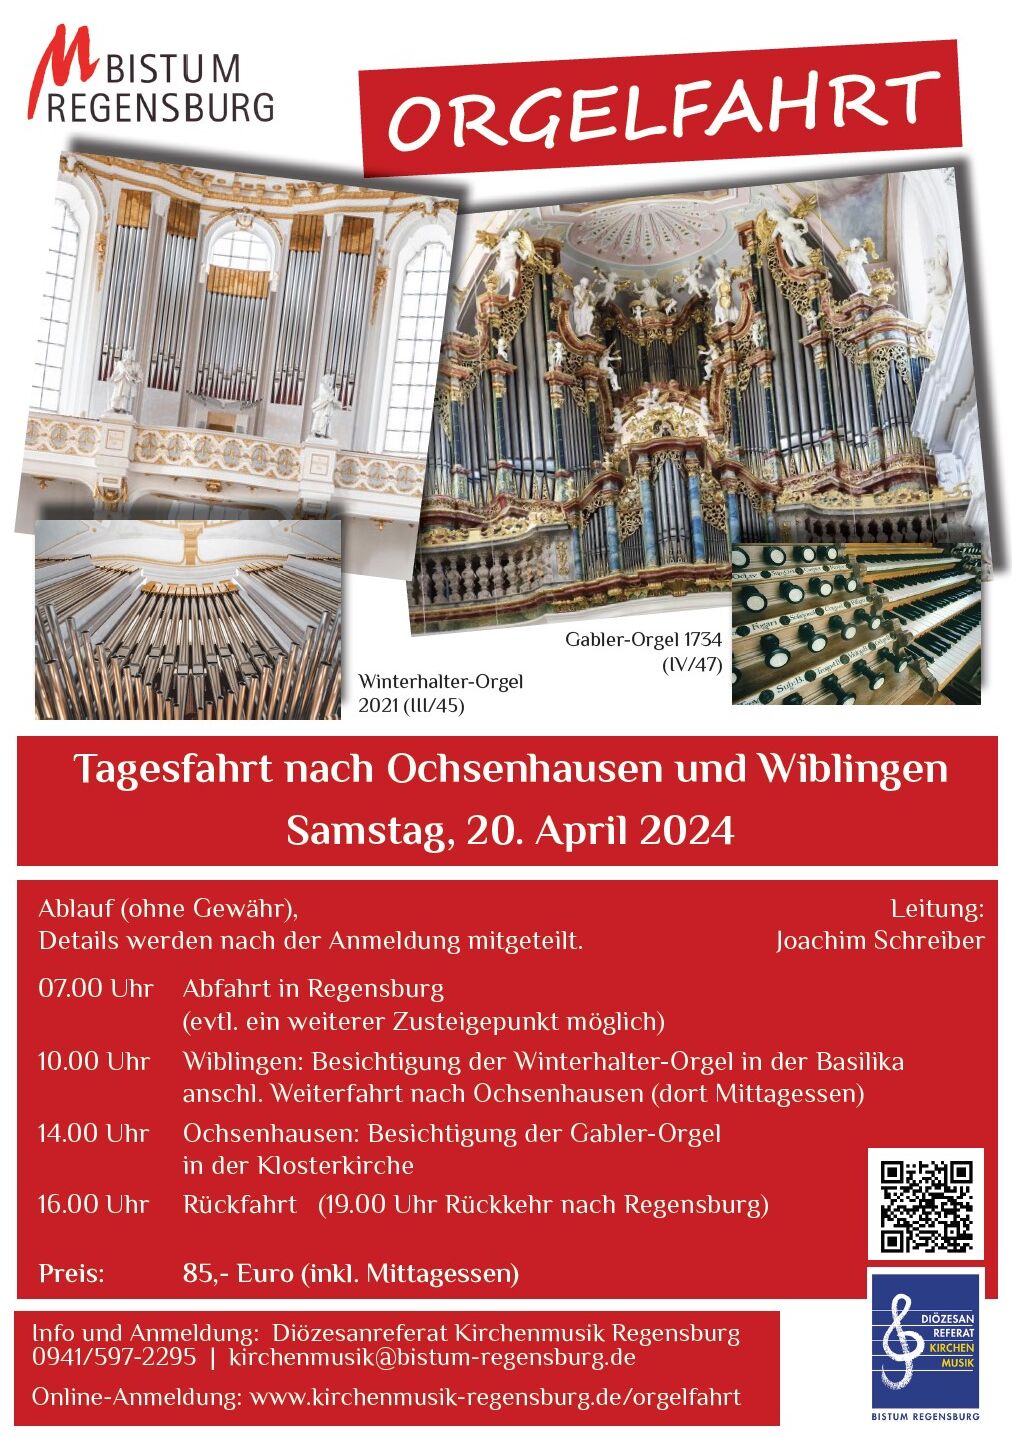 Flyer für Orgelfahrt nach Ochsenhausen und Wiblingen am 20.4.2024